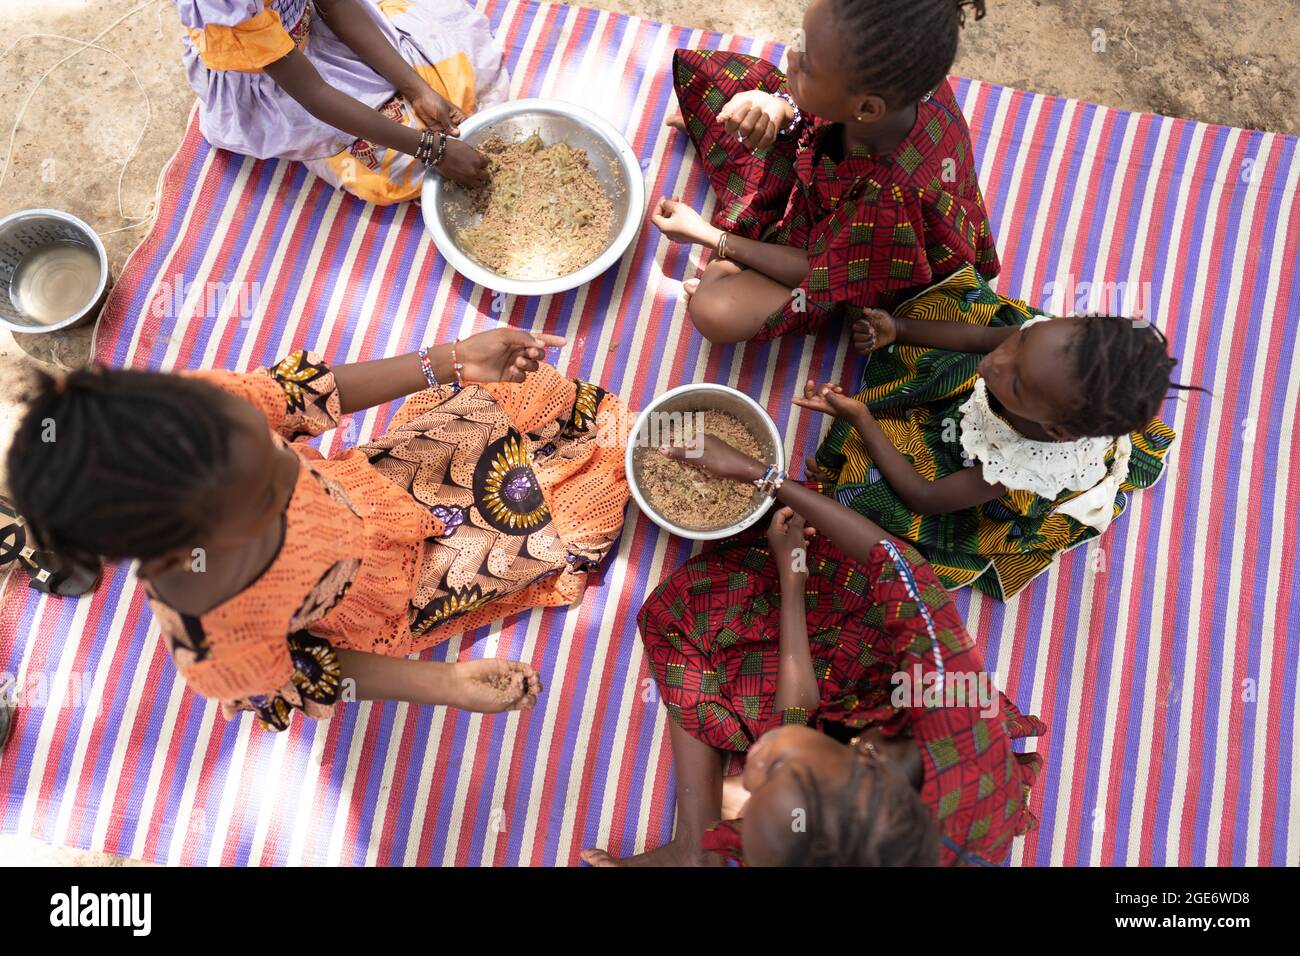 Vista dall'alto di un gruppo di ragazze africane nere ben vestite che si siedono su un tappeto a righe, godendo il loro abbondante pasto durante una celebrazione di famiglia Foto Stock